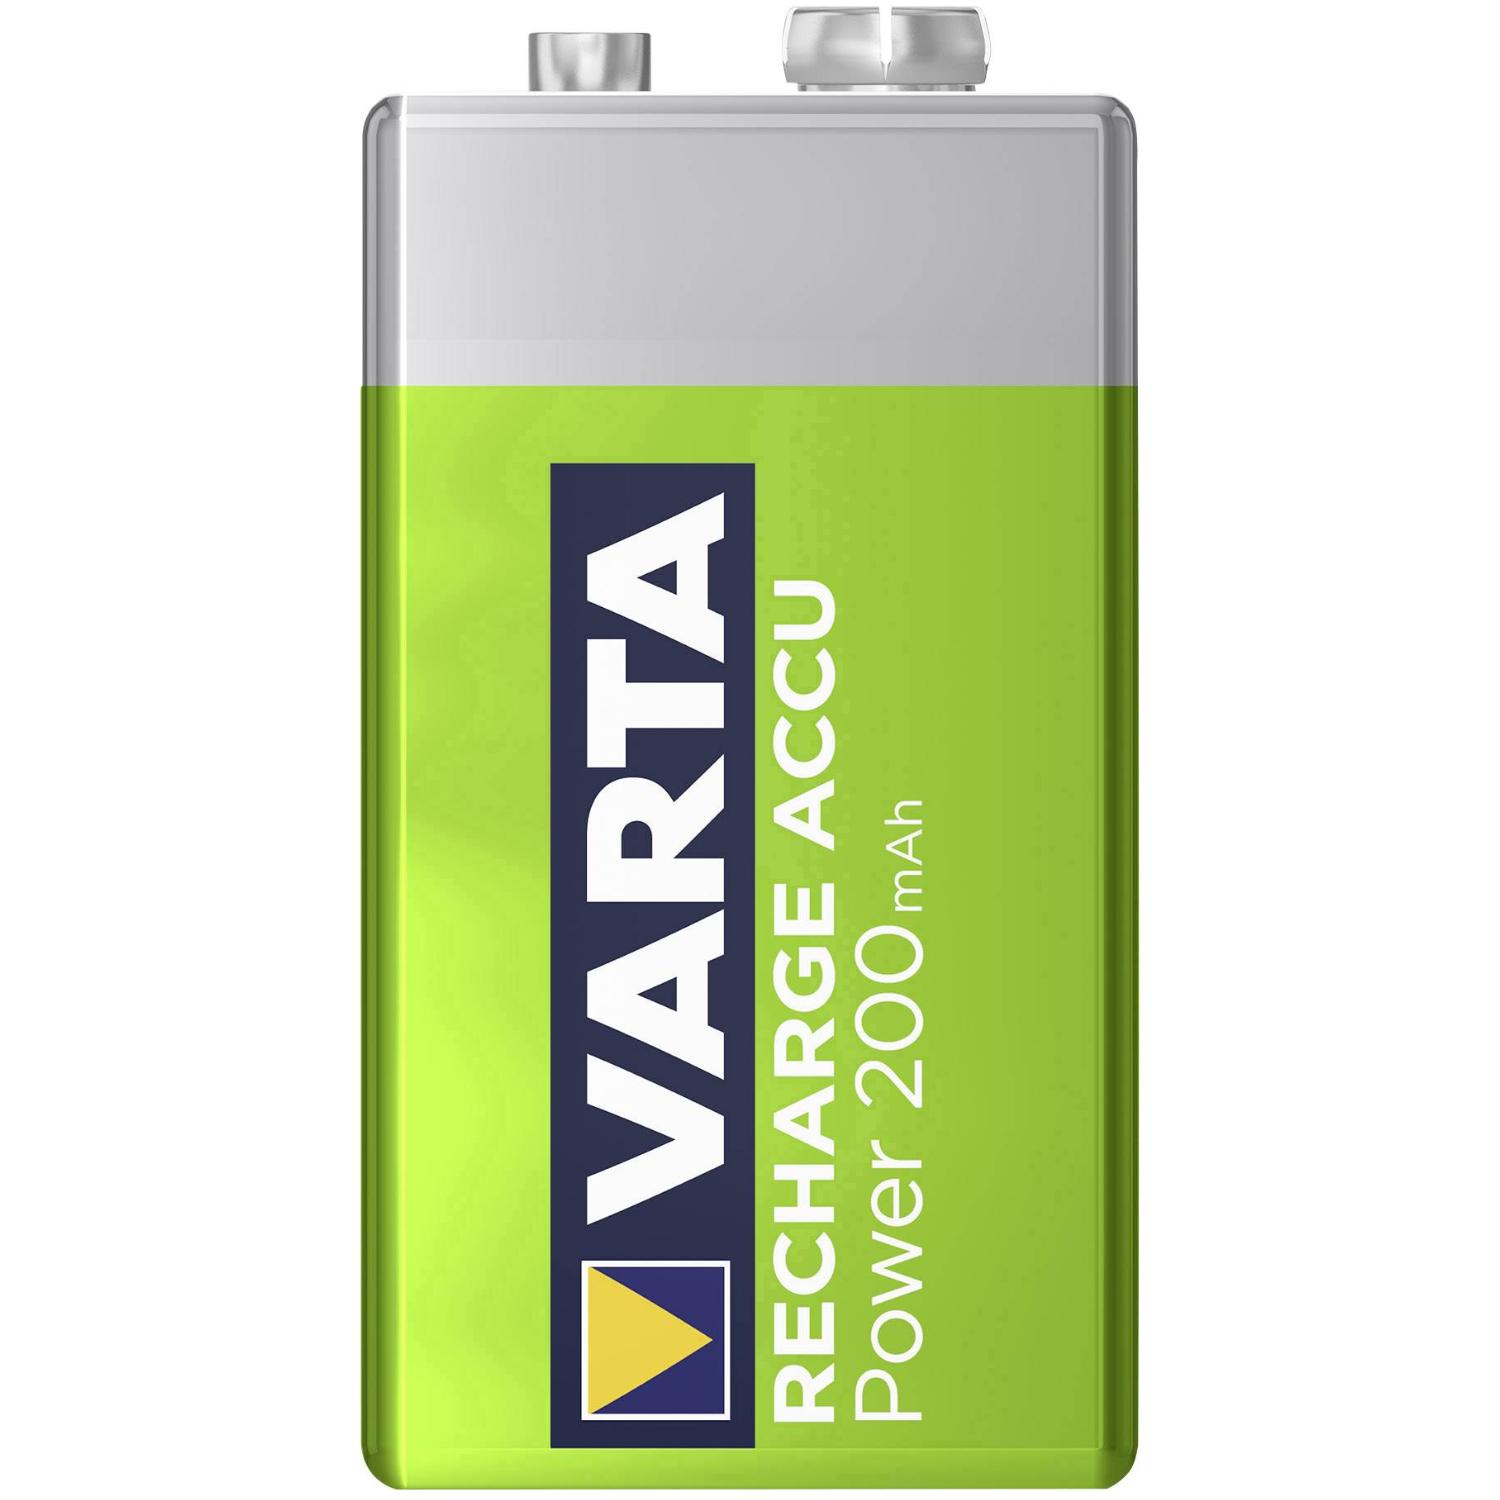 VARTA 9 Volt E Blok NIMH Oplaadbare Batterij - Aantal: 1 stuk Merk: VARTA type: 56722 Capaciteit: 200 mAh Voltage: 8.4 Volt Systeem: code: R22 Overig: 6LR61, LR22, 9V block